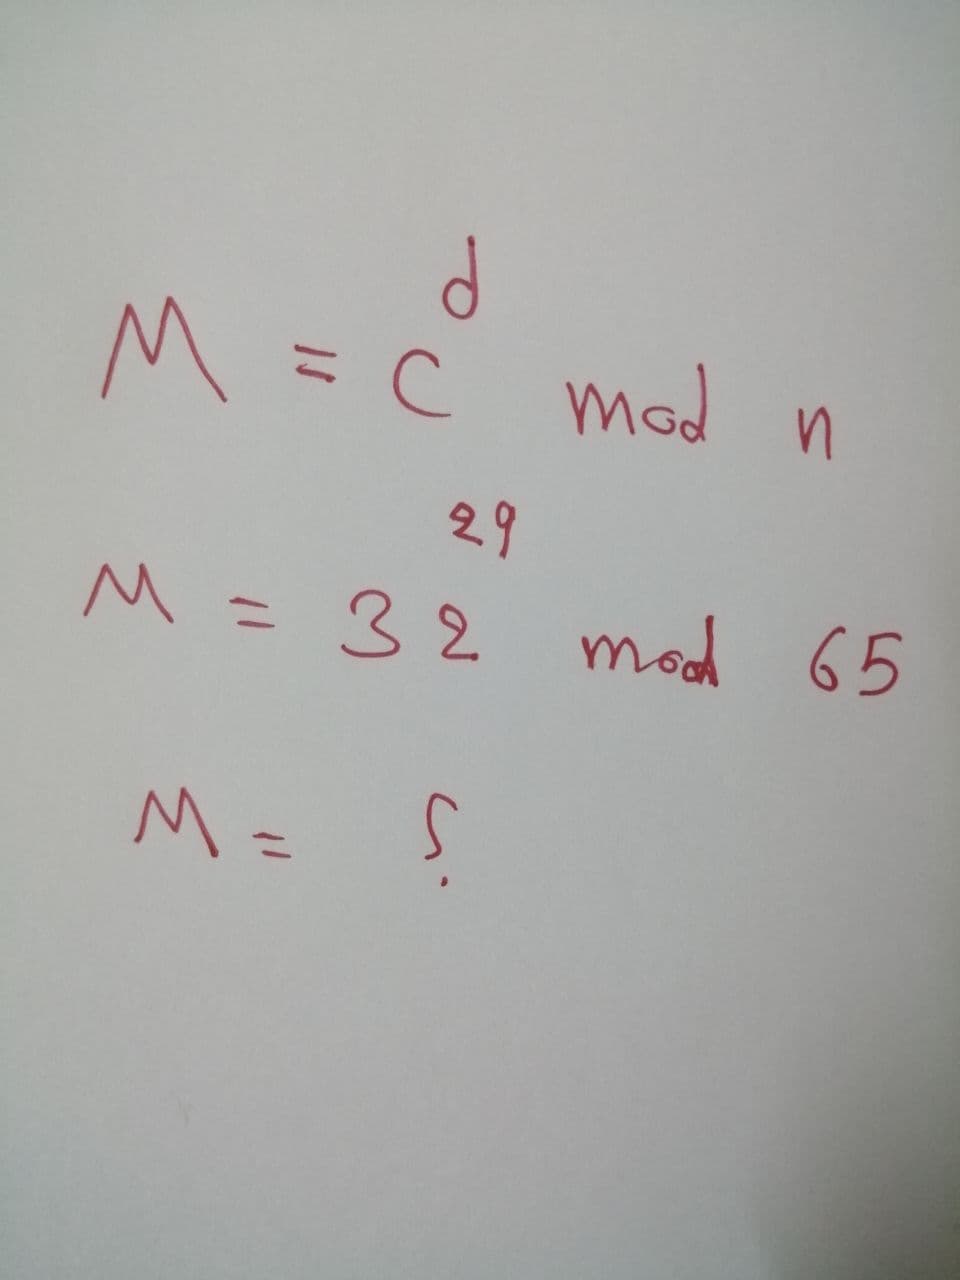 M = C mod n
%3D
29
M =32
mod 65
%3D
M =
